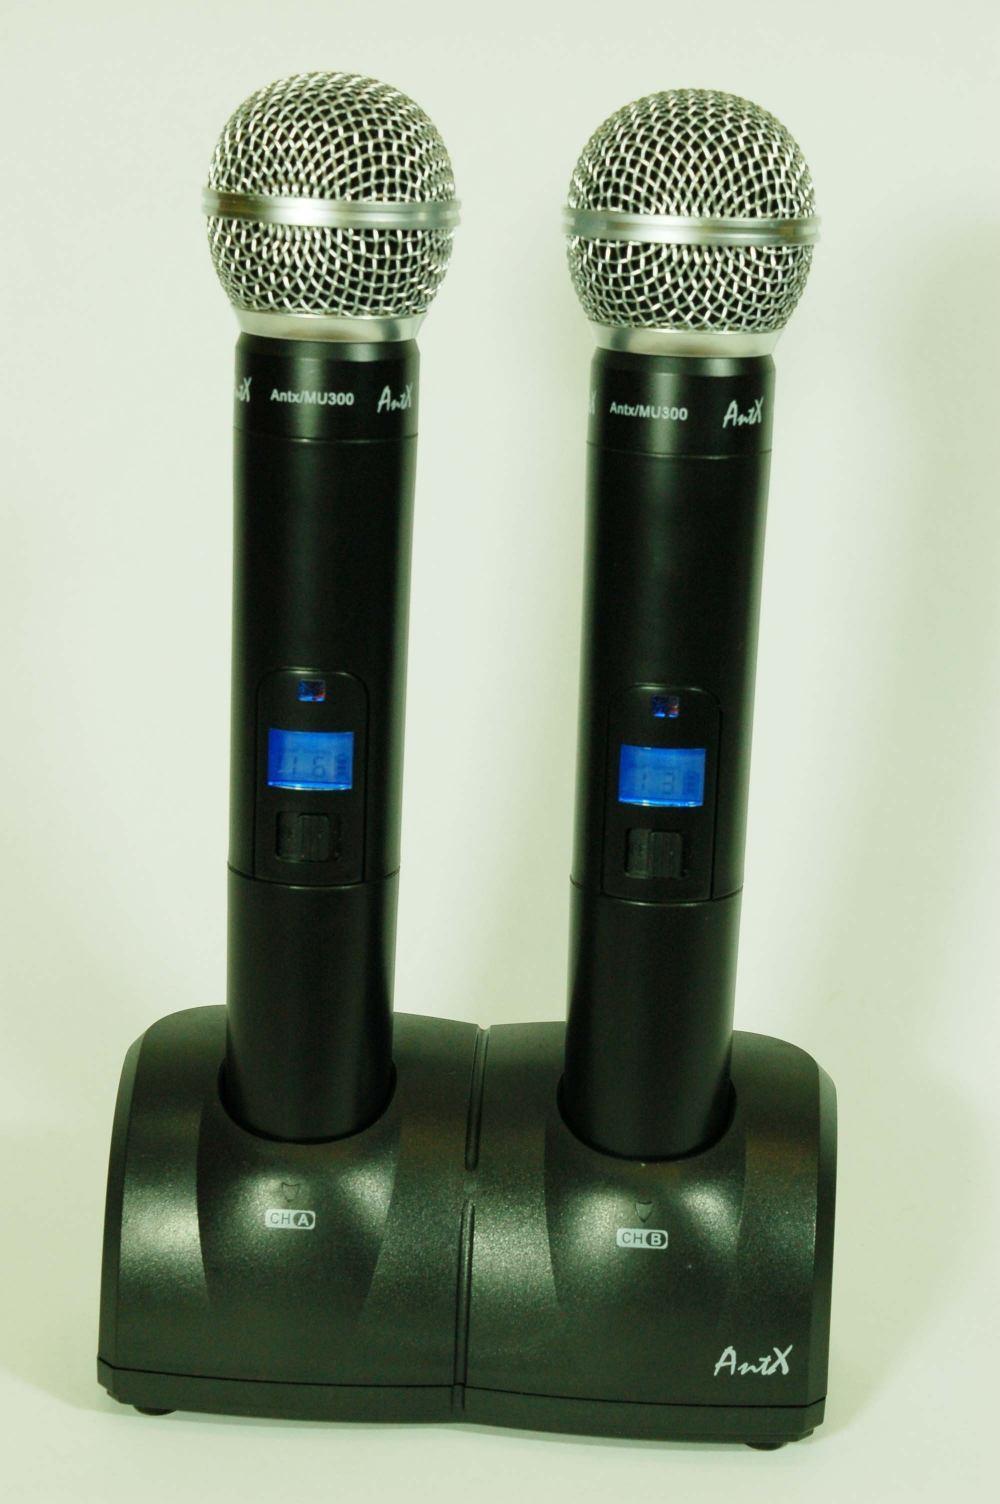 двоен дистанционен UHF микрофон MU300